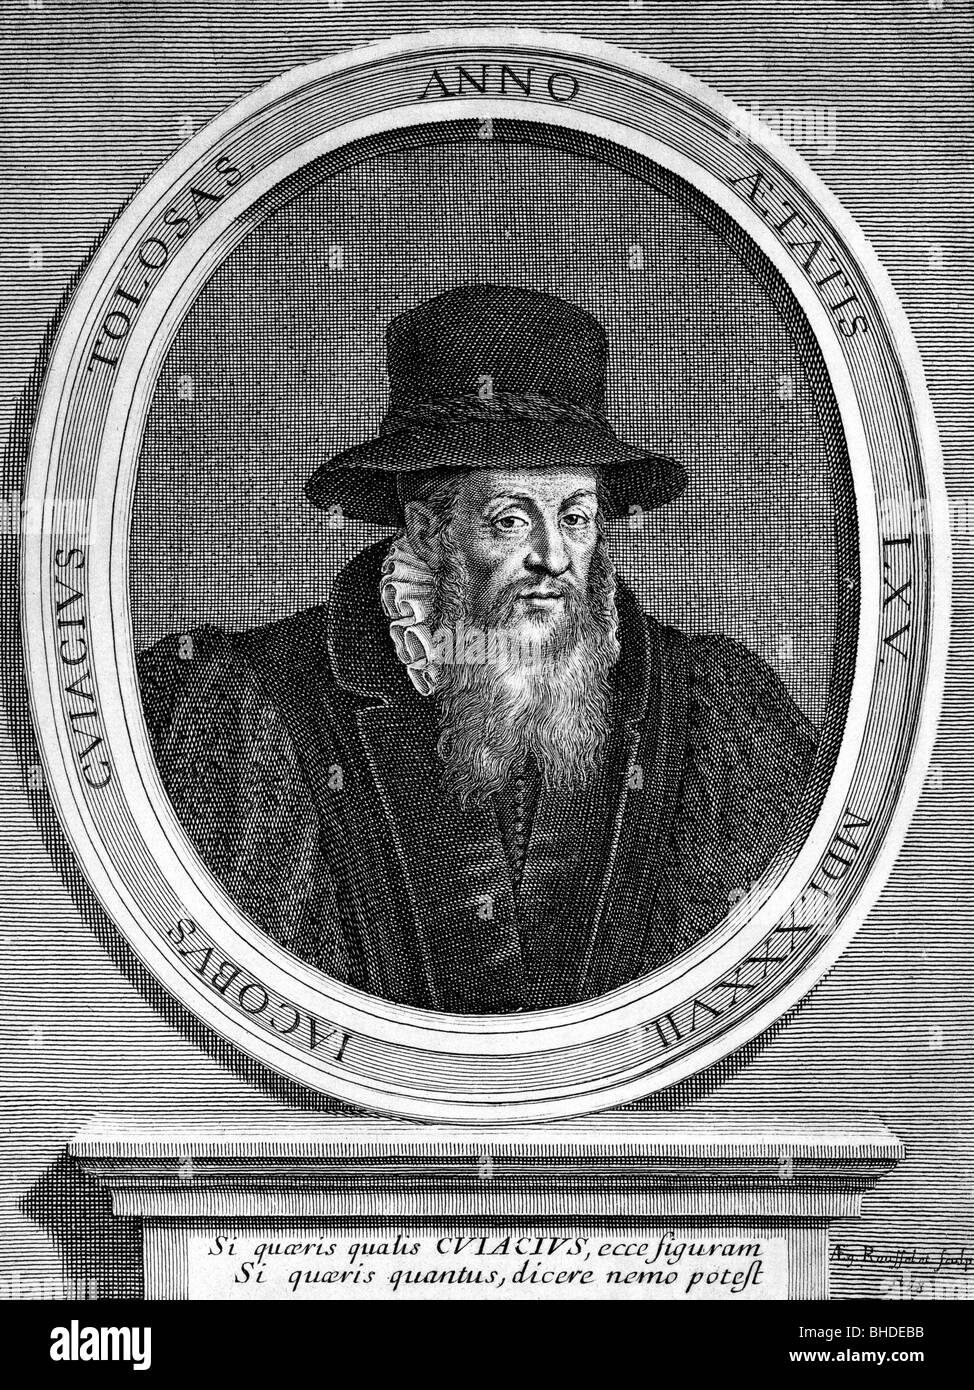 Cujas, Jacques de (Cujacius), 1522 - 4.10.1590, französischer Jurist, Porträt mit lateinischer Beschreibung, Holzgravur, Stockfoto